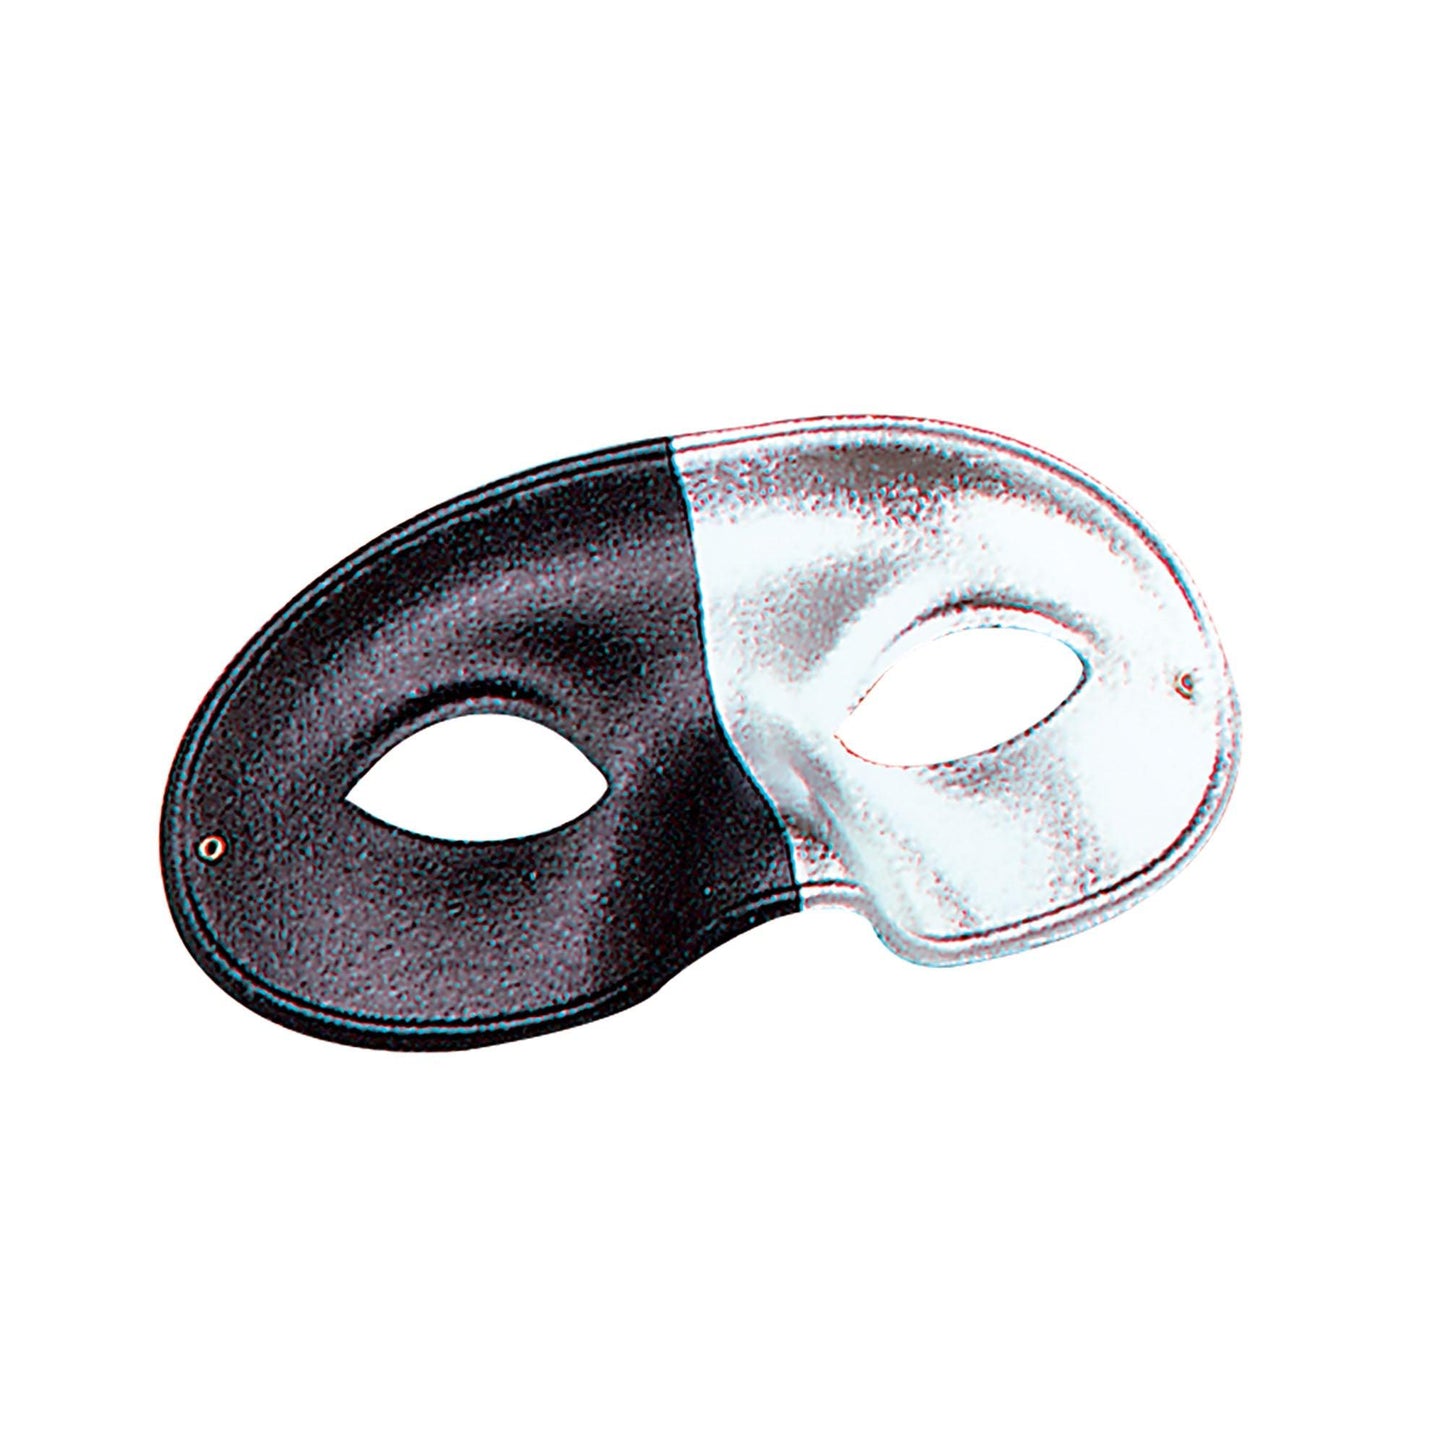 Silver/Black 2 Tone Eye Mask - Labreeze